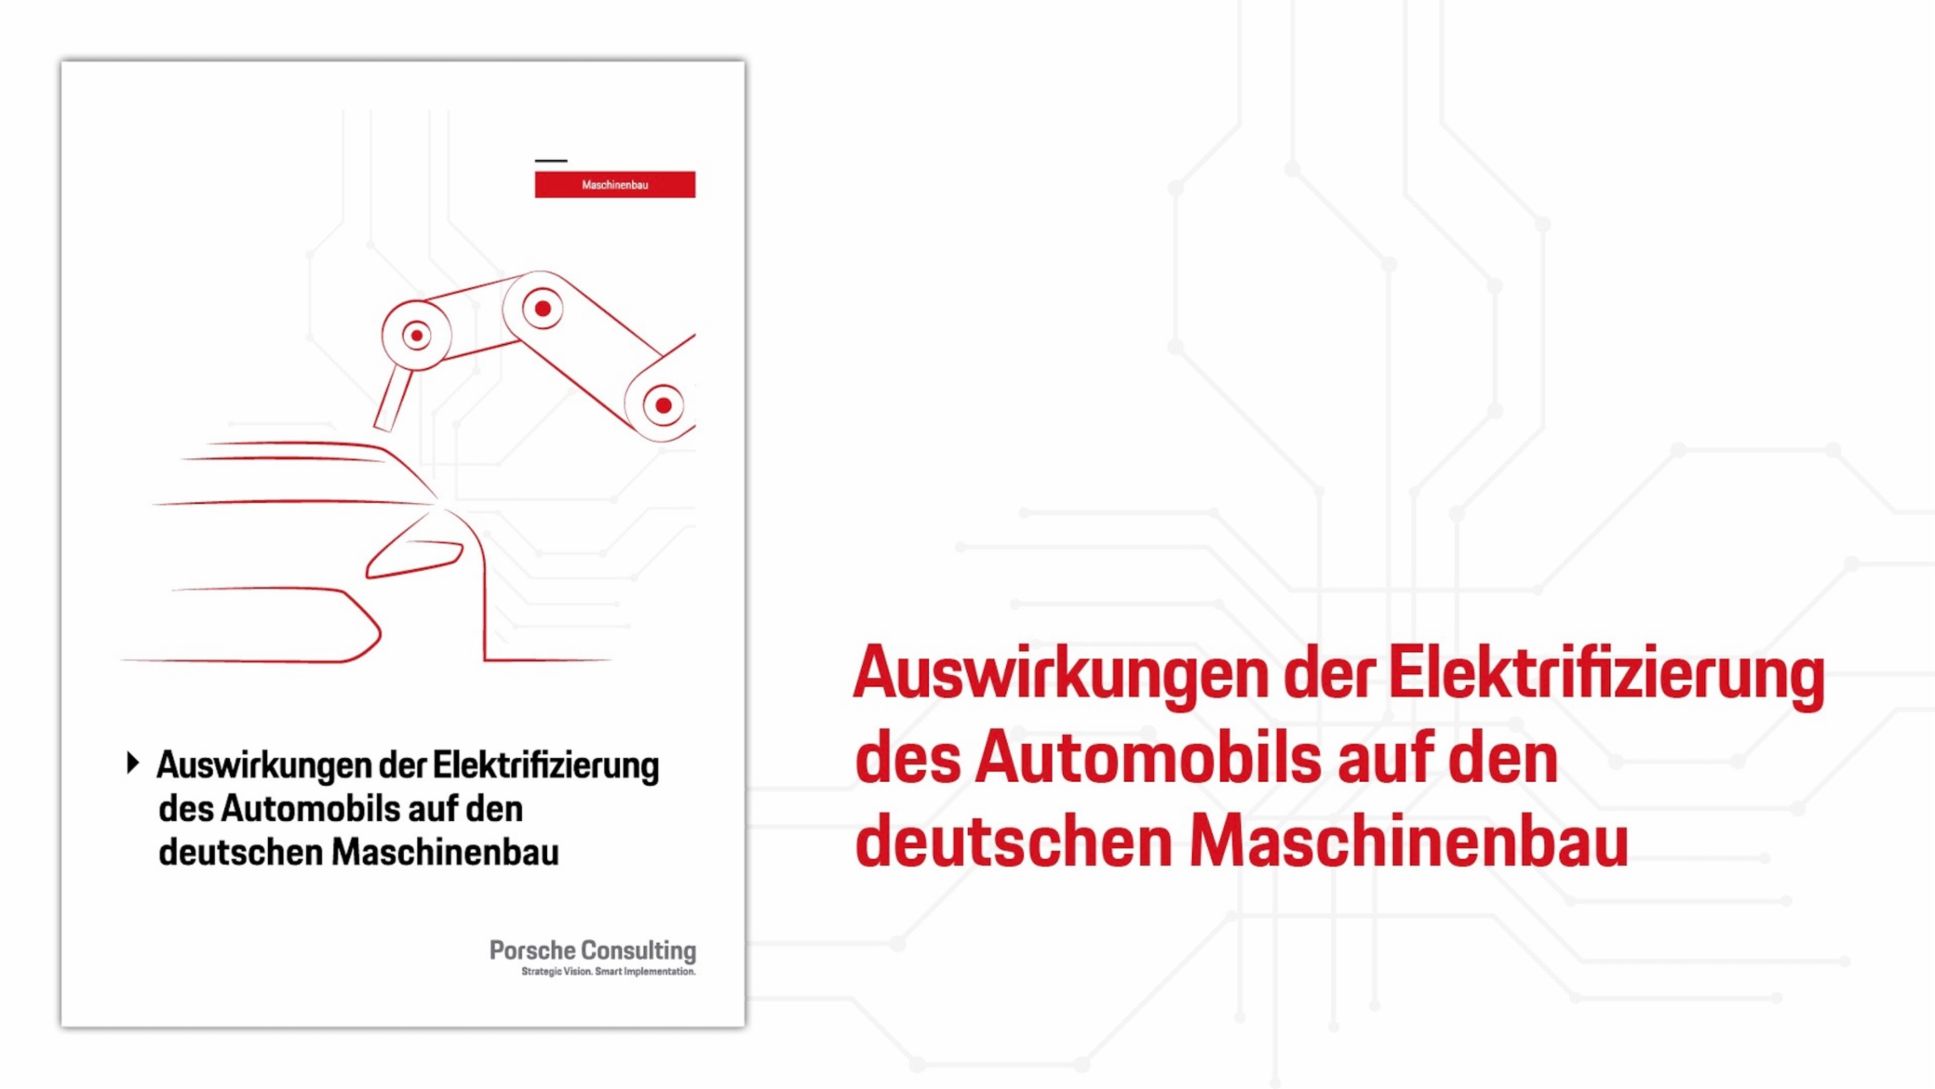 Auswirkungen der Elektrifizierung des Automobils auf den deutschen Maschinenbau, 2018, Porsche AG